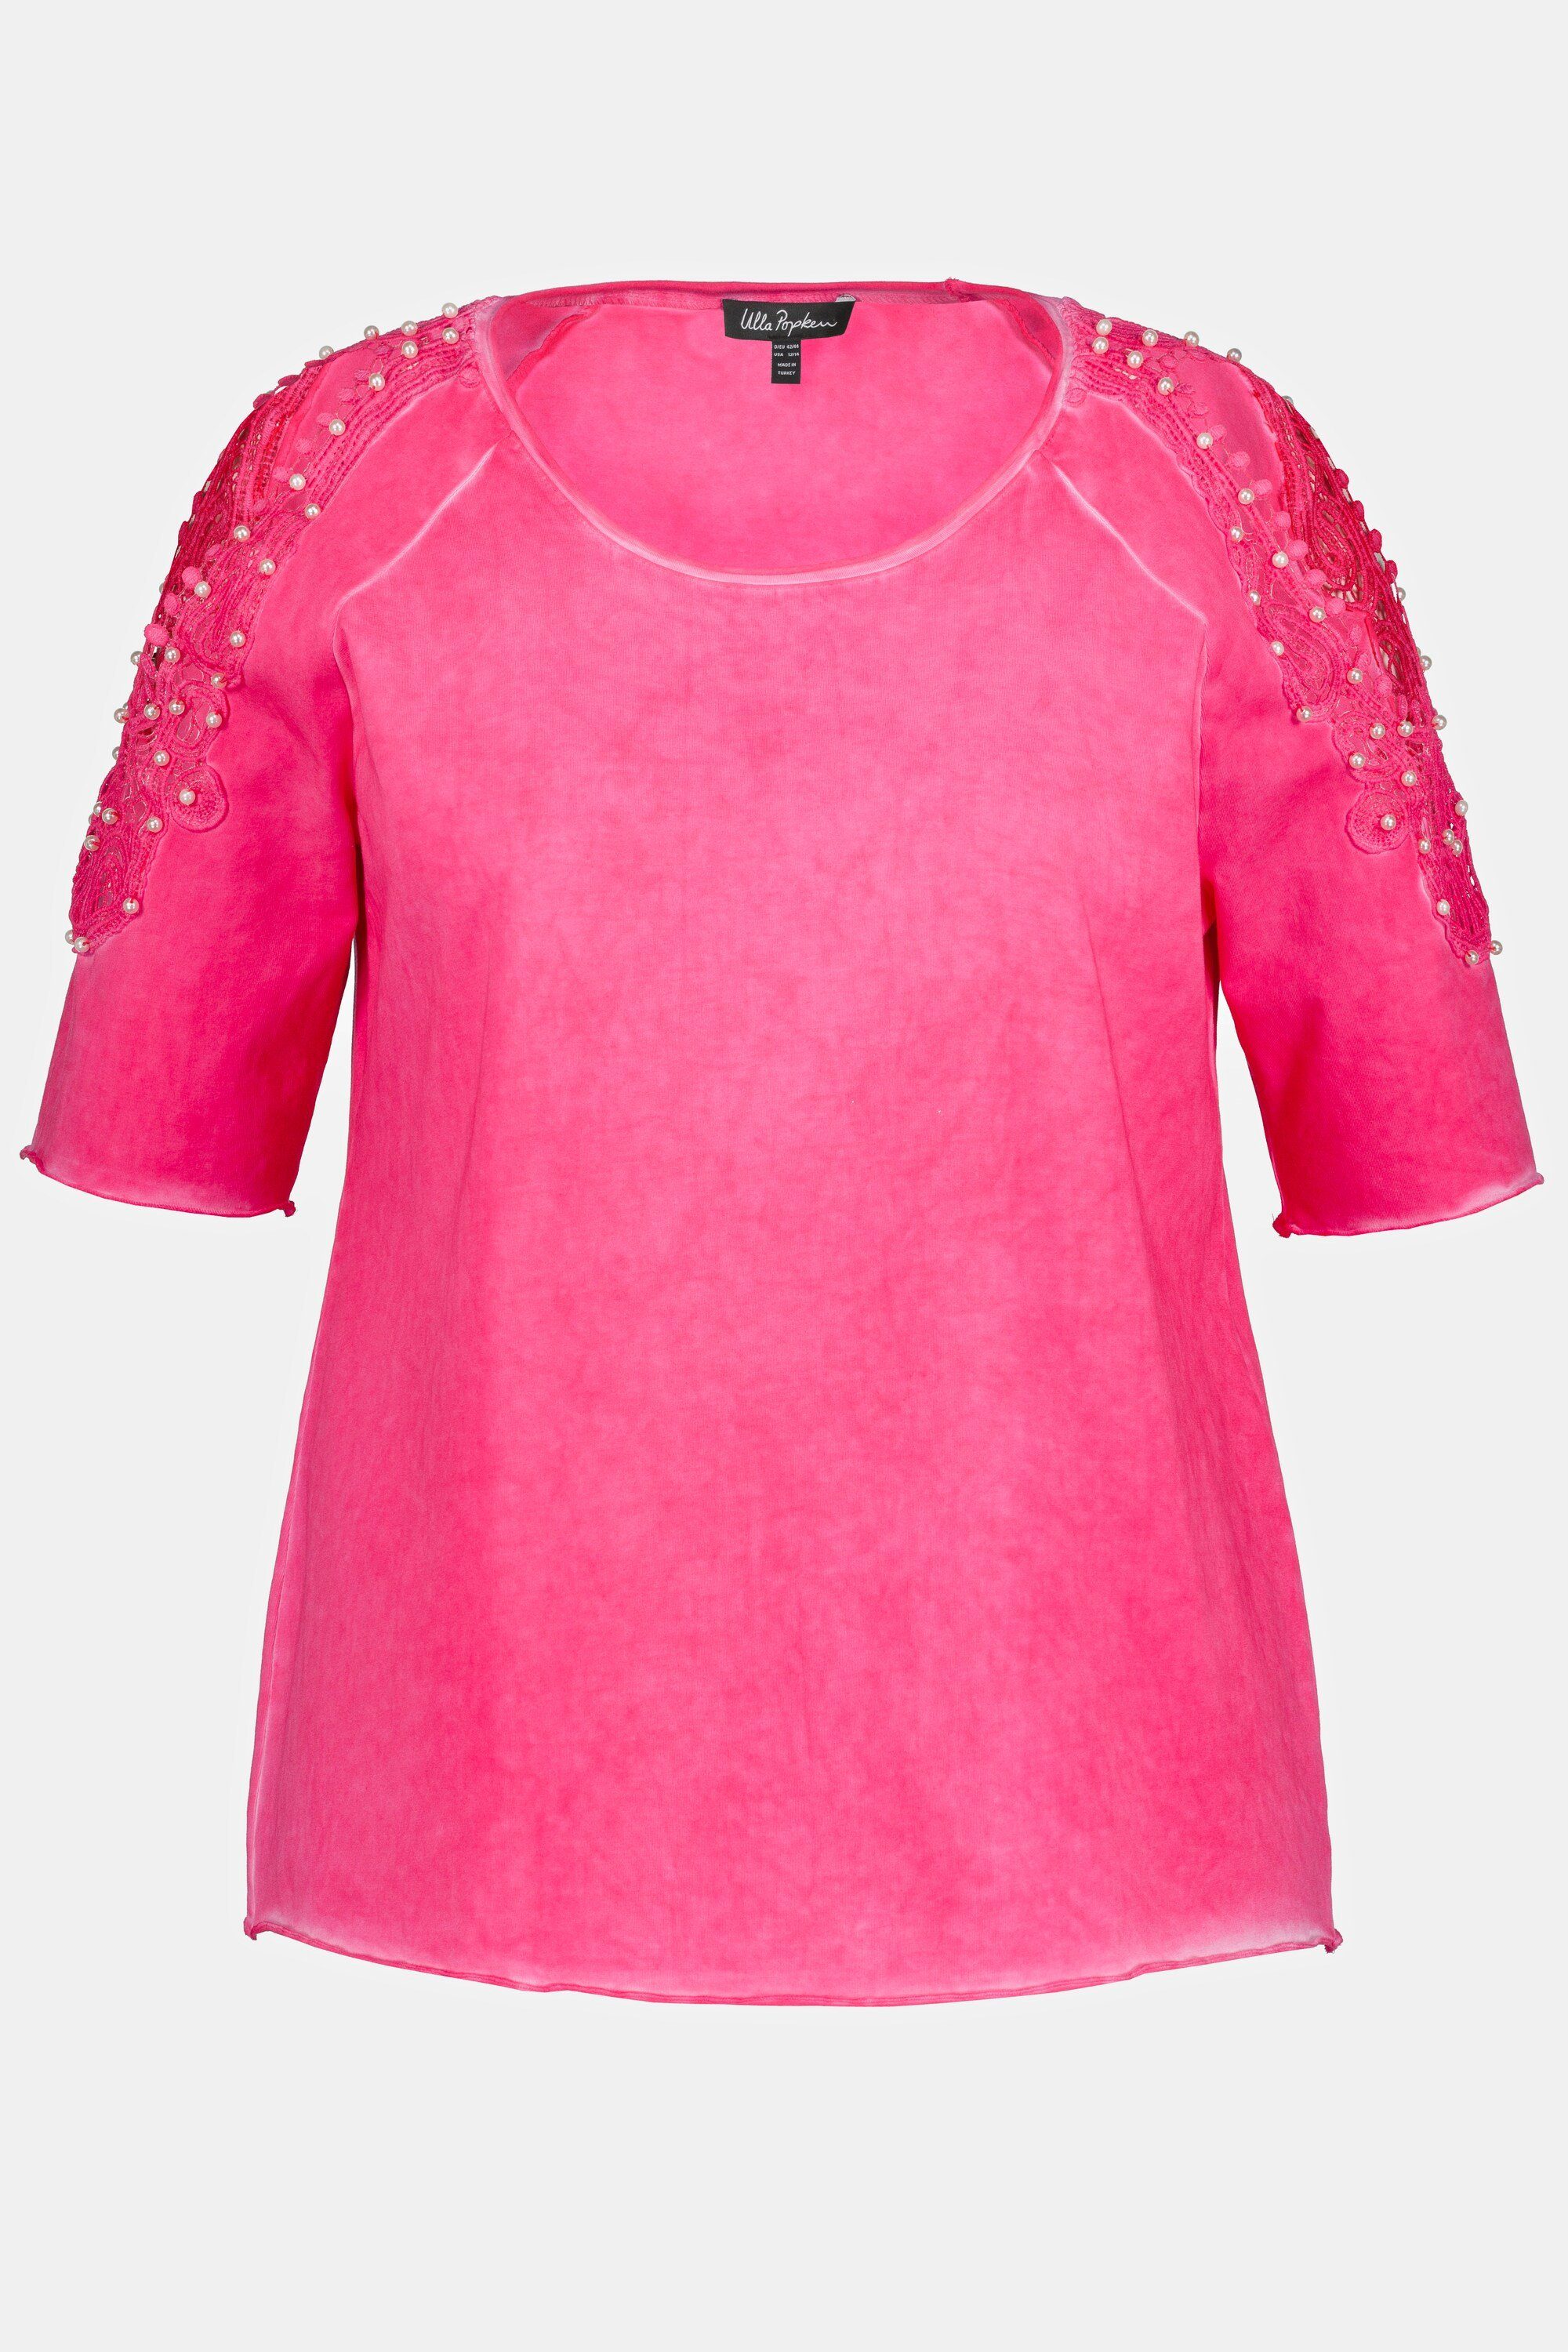 Ulla Popken Rundhalsshirt T-Shirt Spitze pink Schulterschlitze Halbarm Perlen